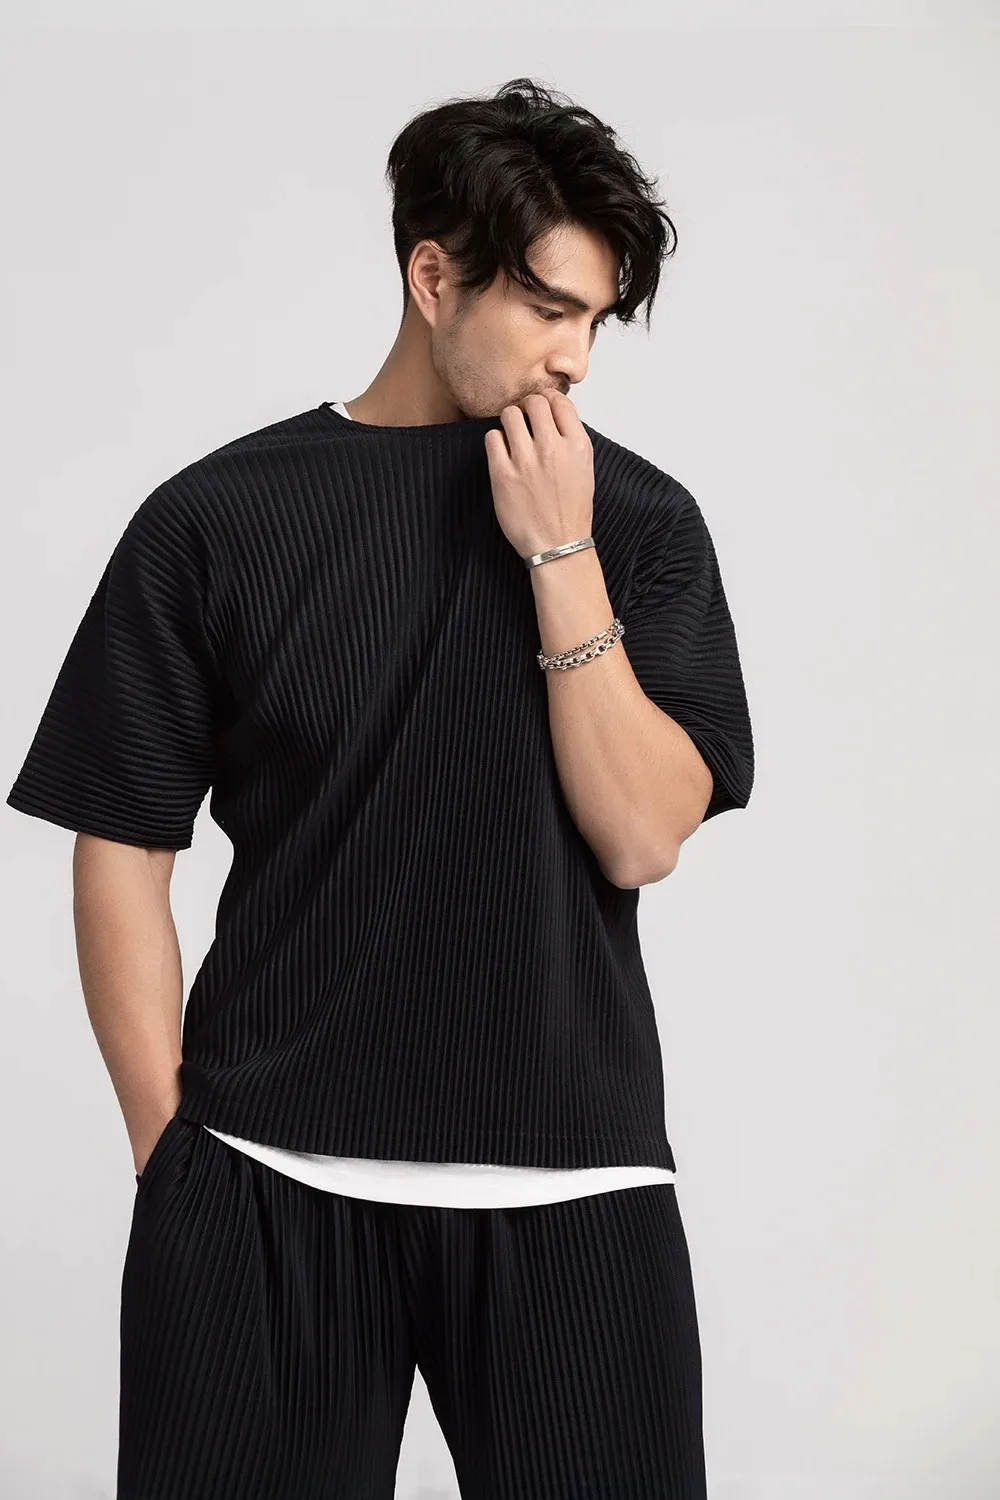 Шипленная футболка Miyake для мужчин летняя одежда с коротким рукавом простые футболки моды черные рубашки круглый воротниц в топ 240507